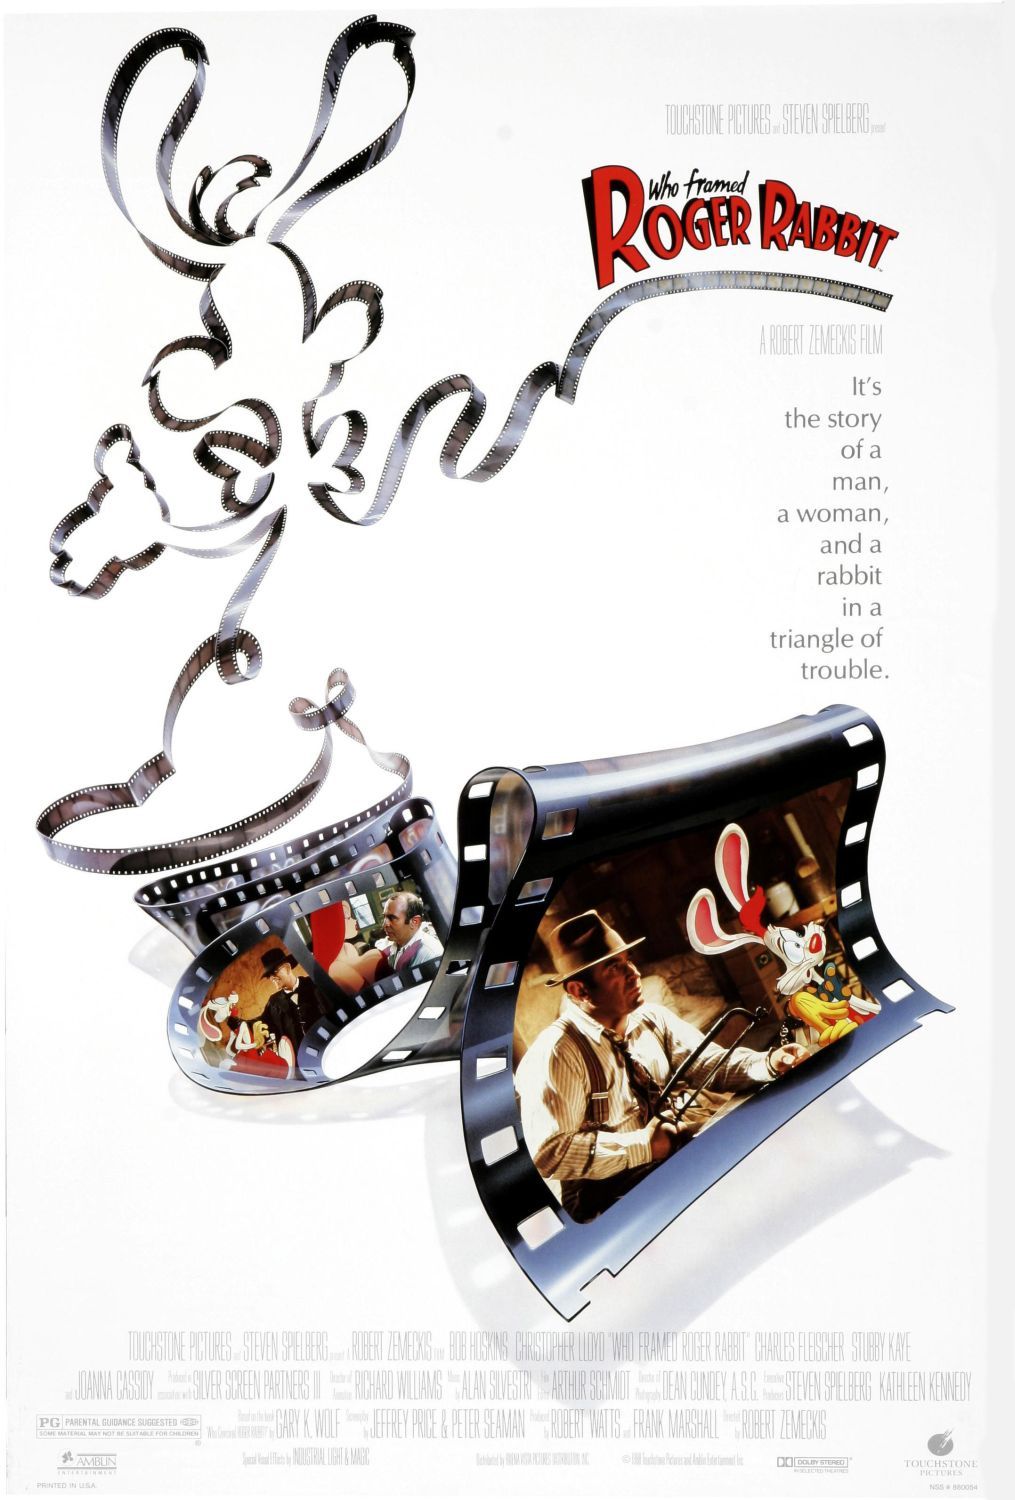 Nonton film Who Framed Roger Rabbit? layarkaca21 indoxx1 ganool online streaming terbaru